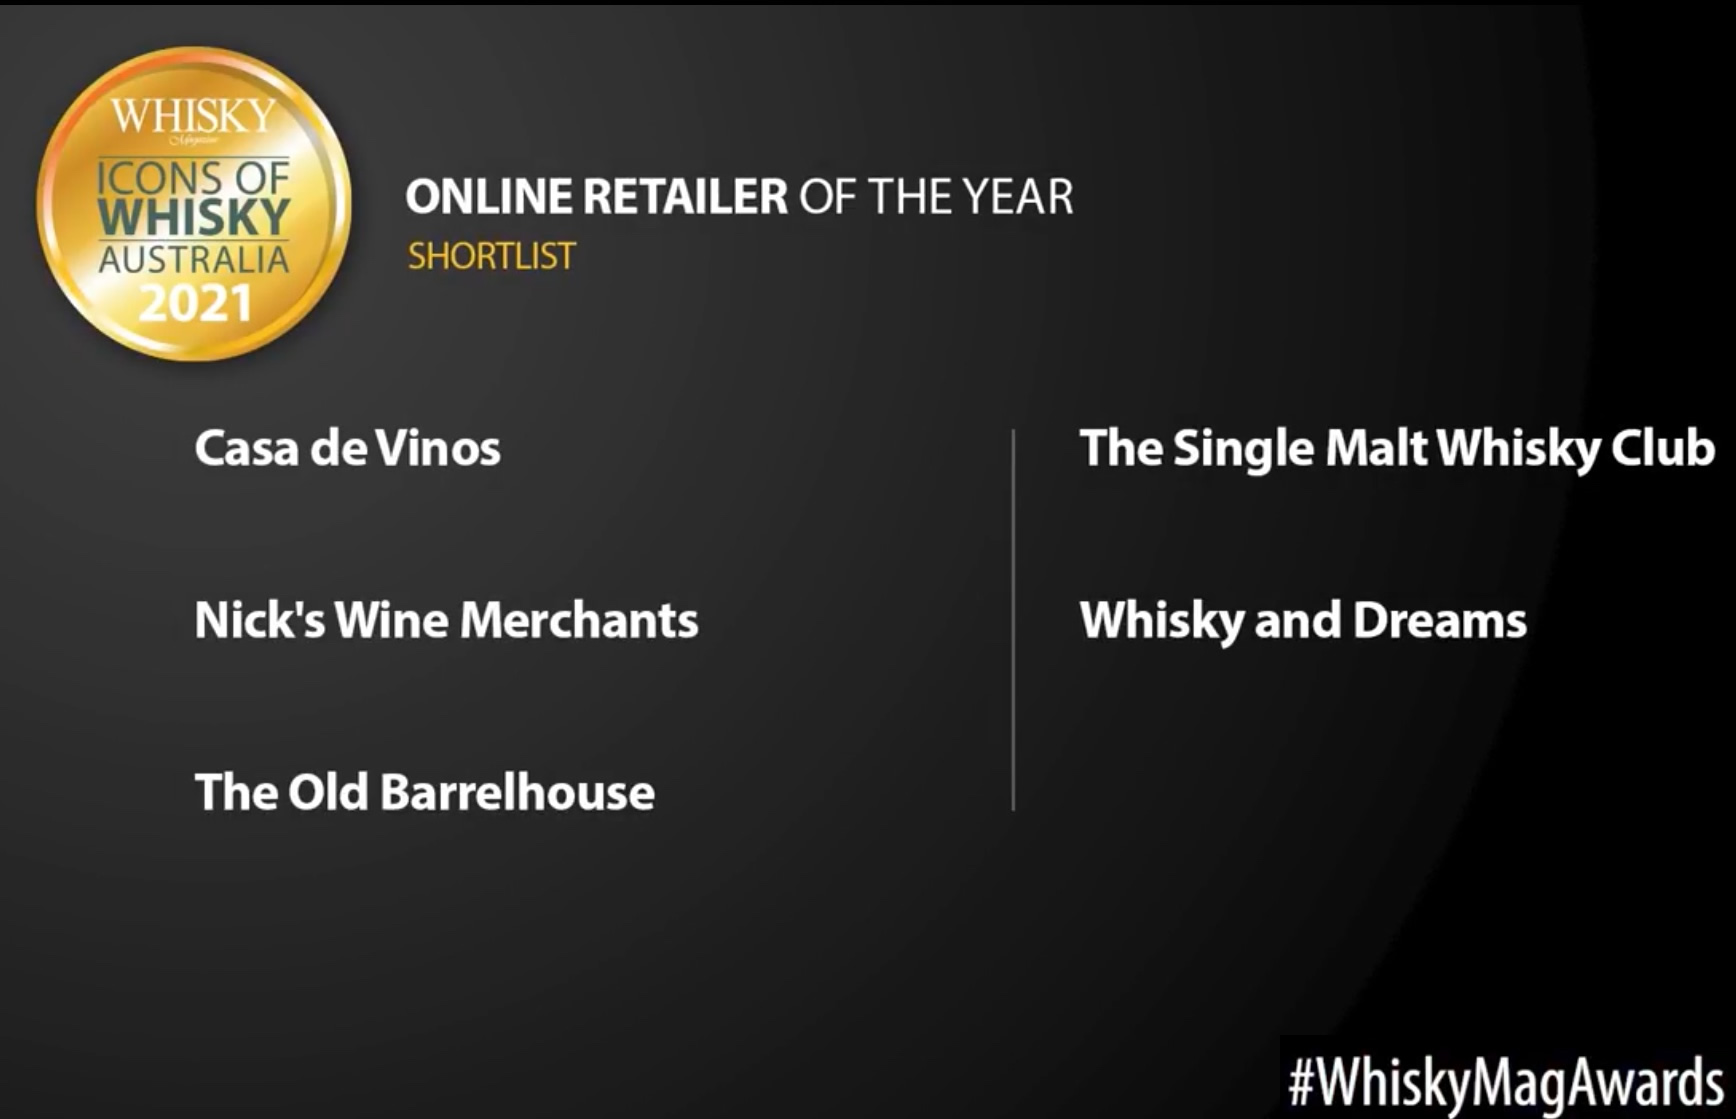 Icons of Whisky Awards Australia